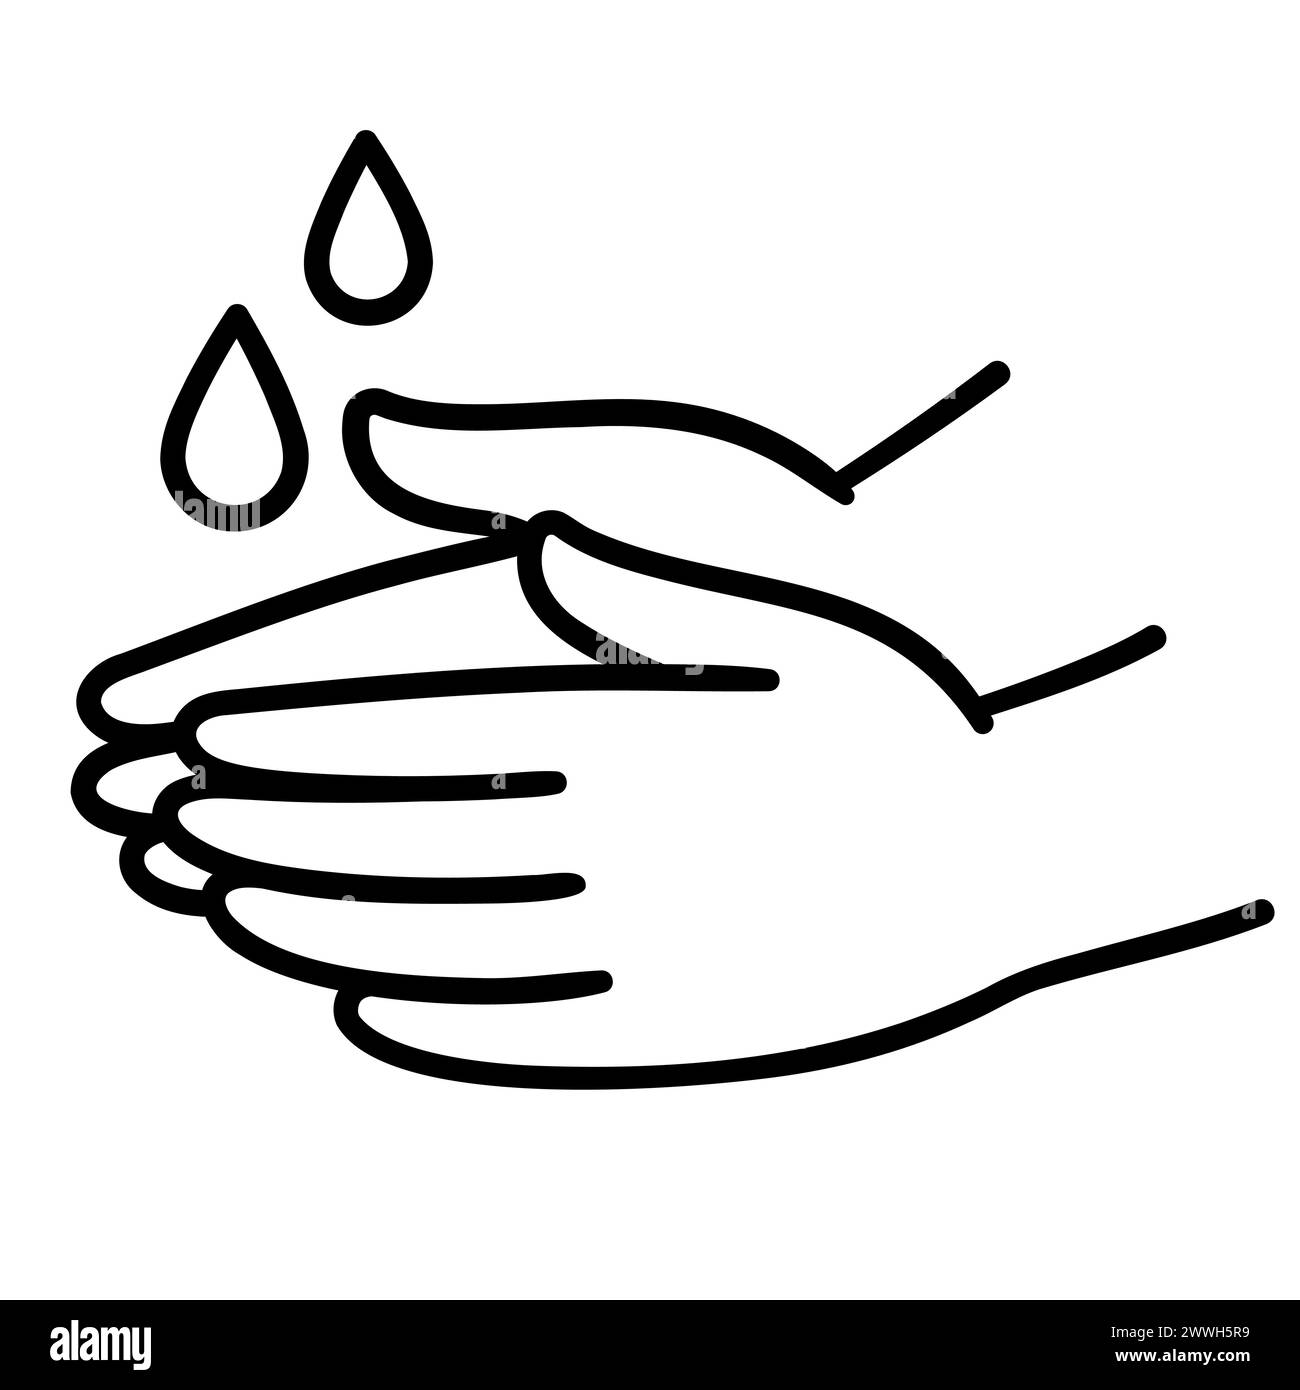 Icône de lavage à la main, dessin à la main noir et blanc dessin à la main art doodle. Deux mains avec des gouttes d'eau. Illustration clip art simple, dessin vectoriel. Illustration de Vecteur